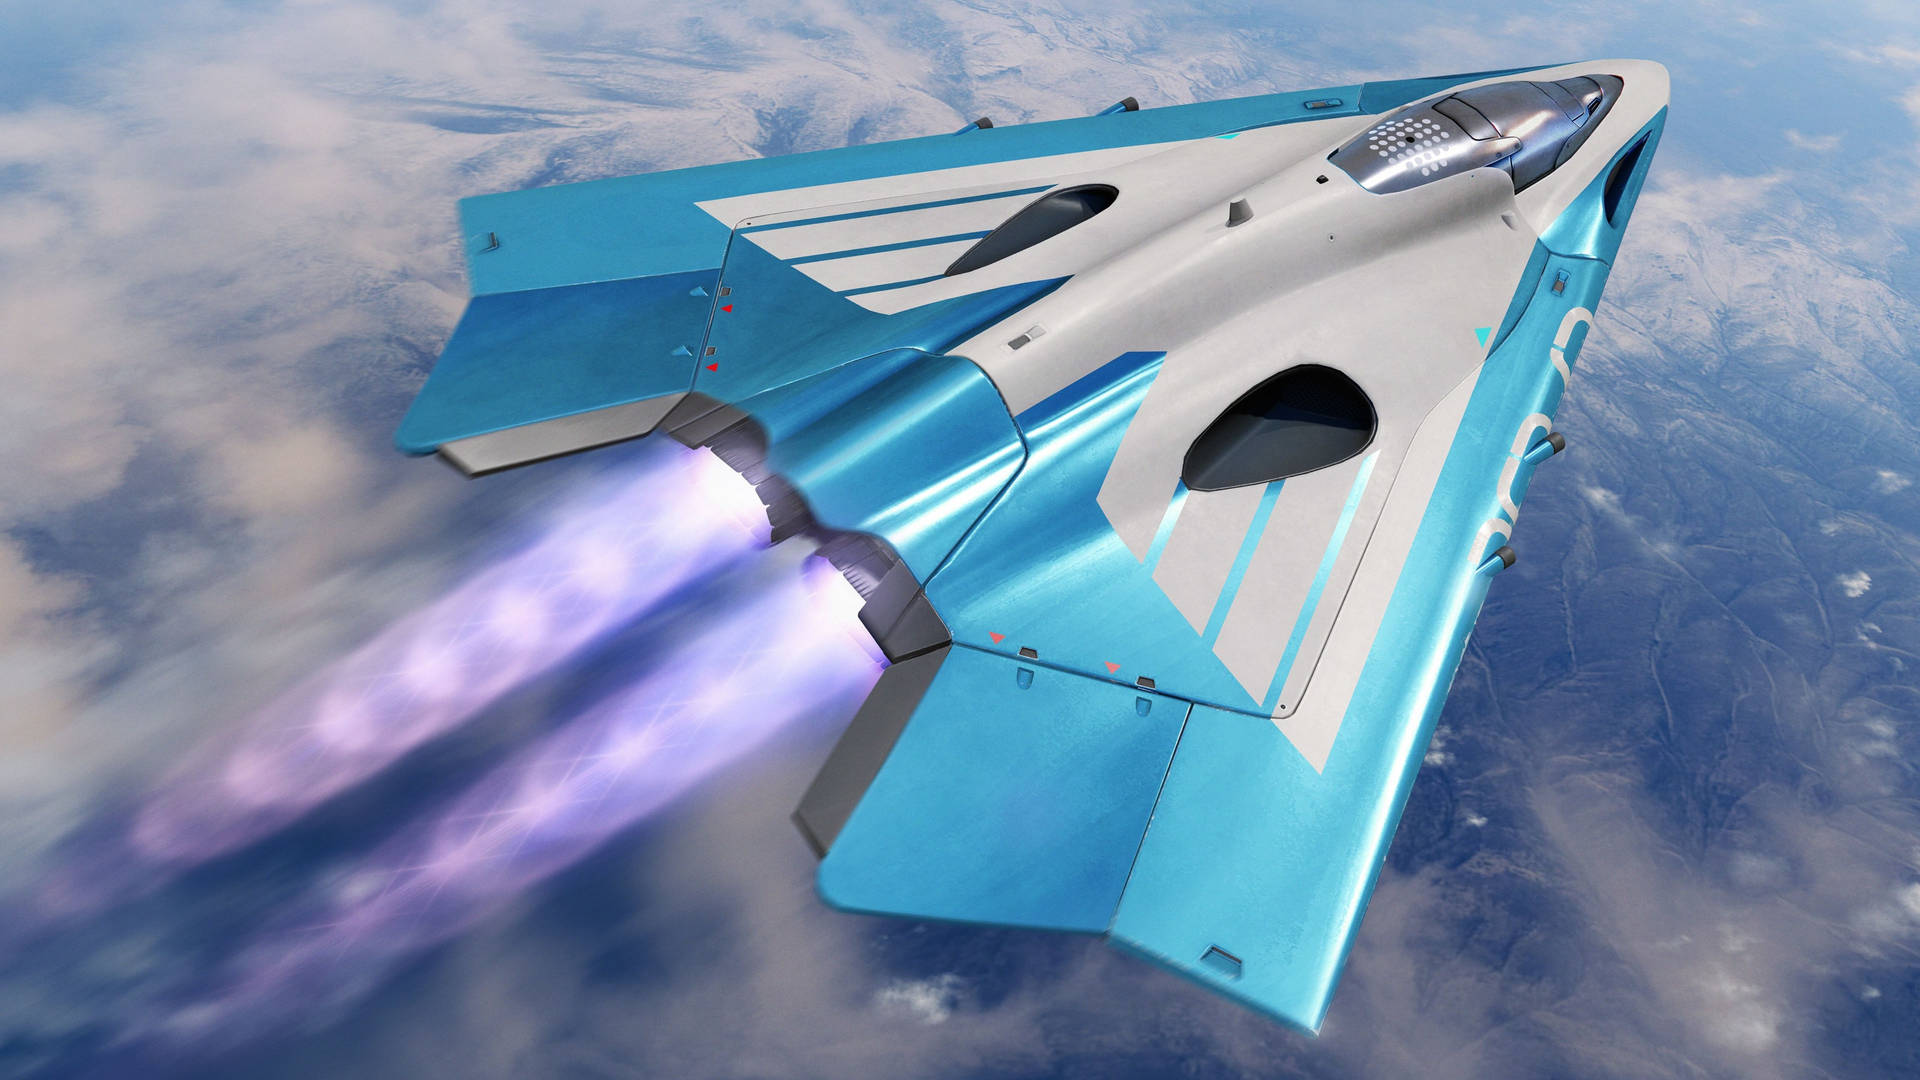 4k Plane In Metallic Blue Paint